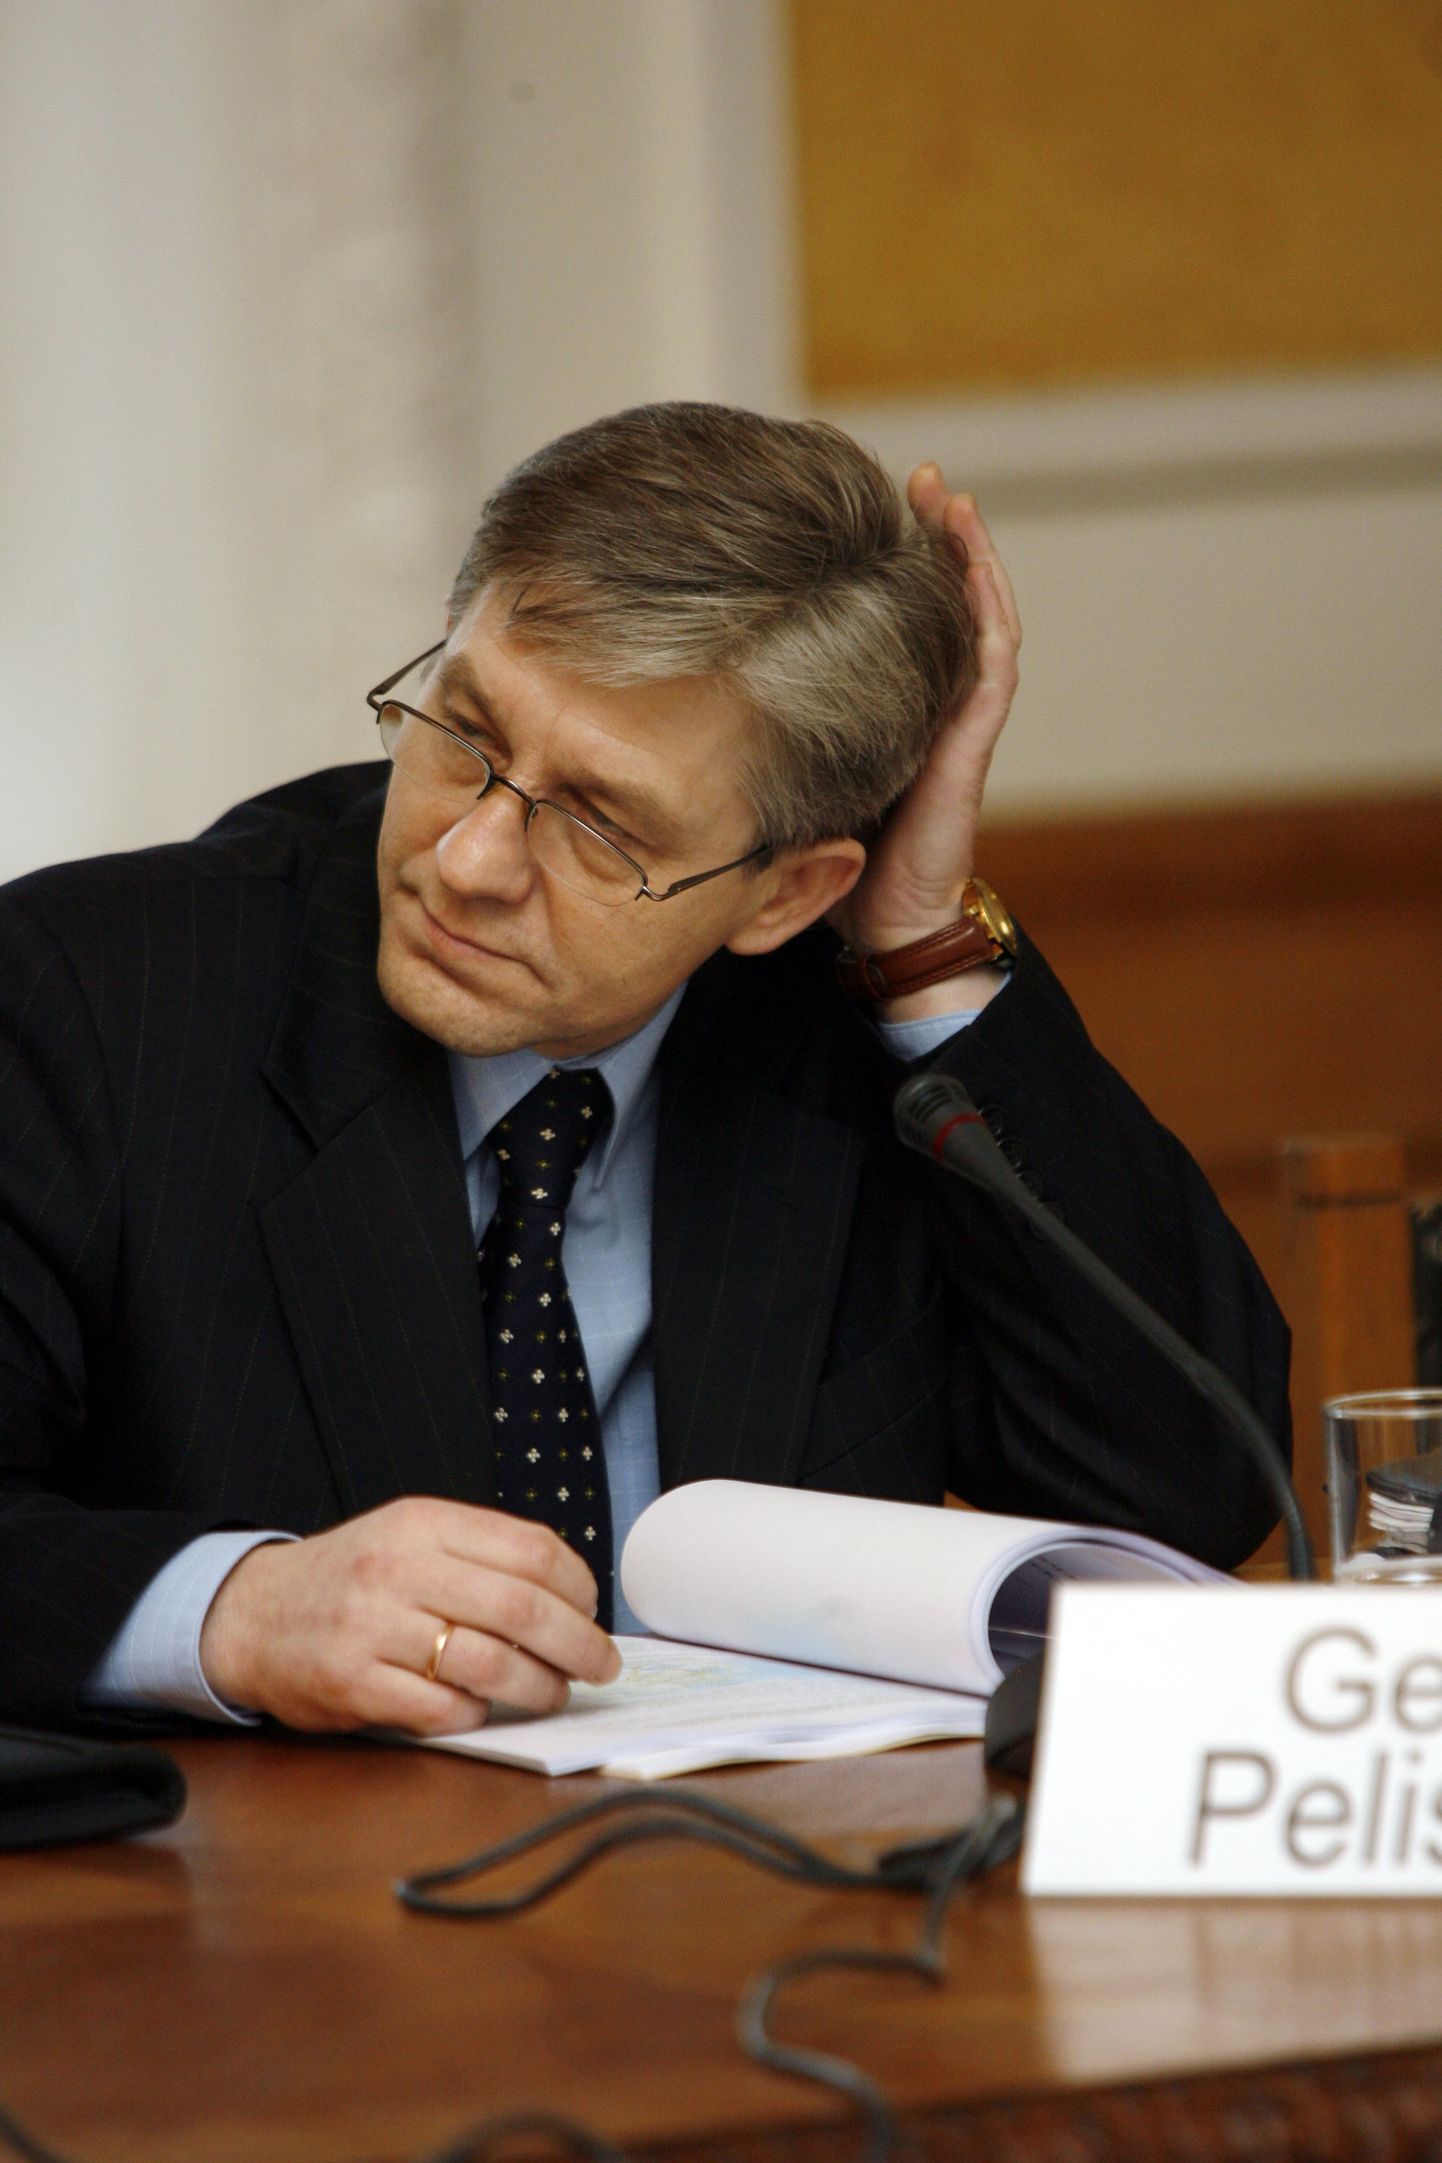 Tallinna televisiooni nõukogu esimees Georg Pelisaar.